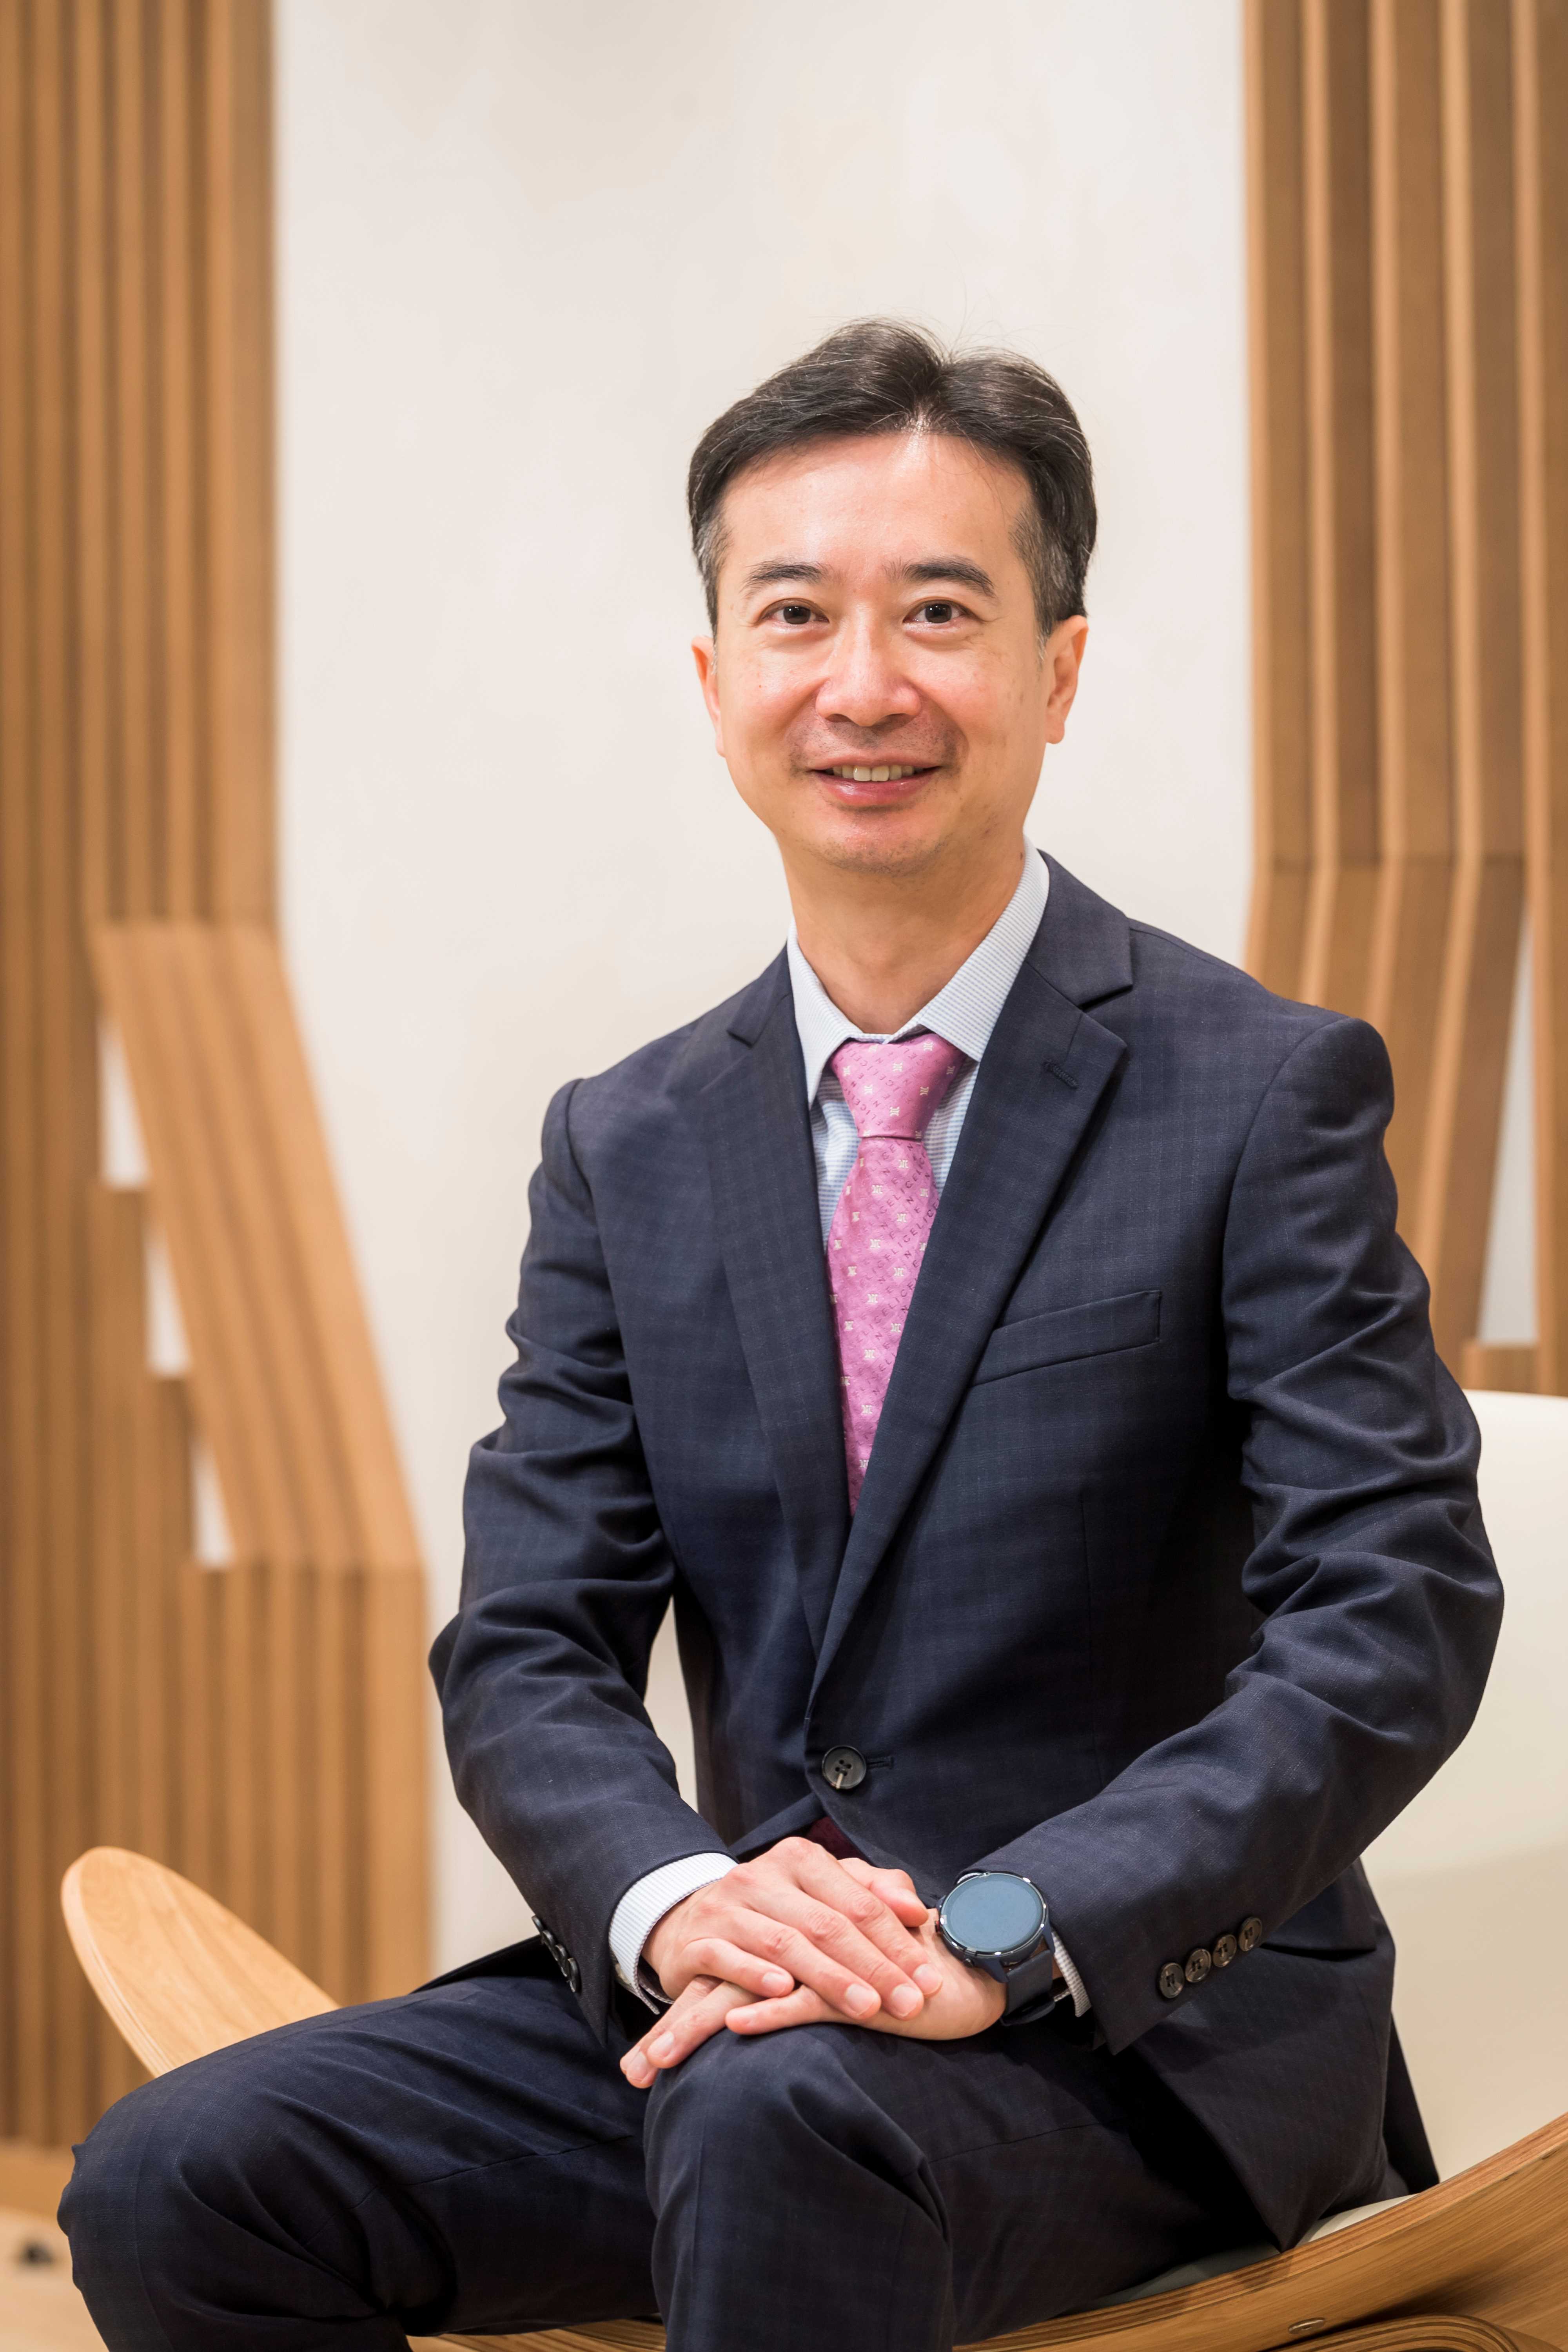 Prof Tony Feng